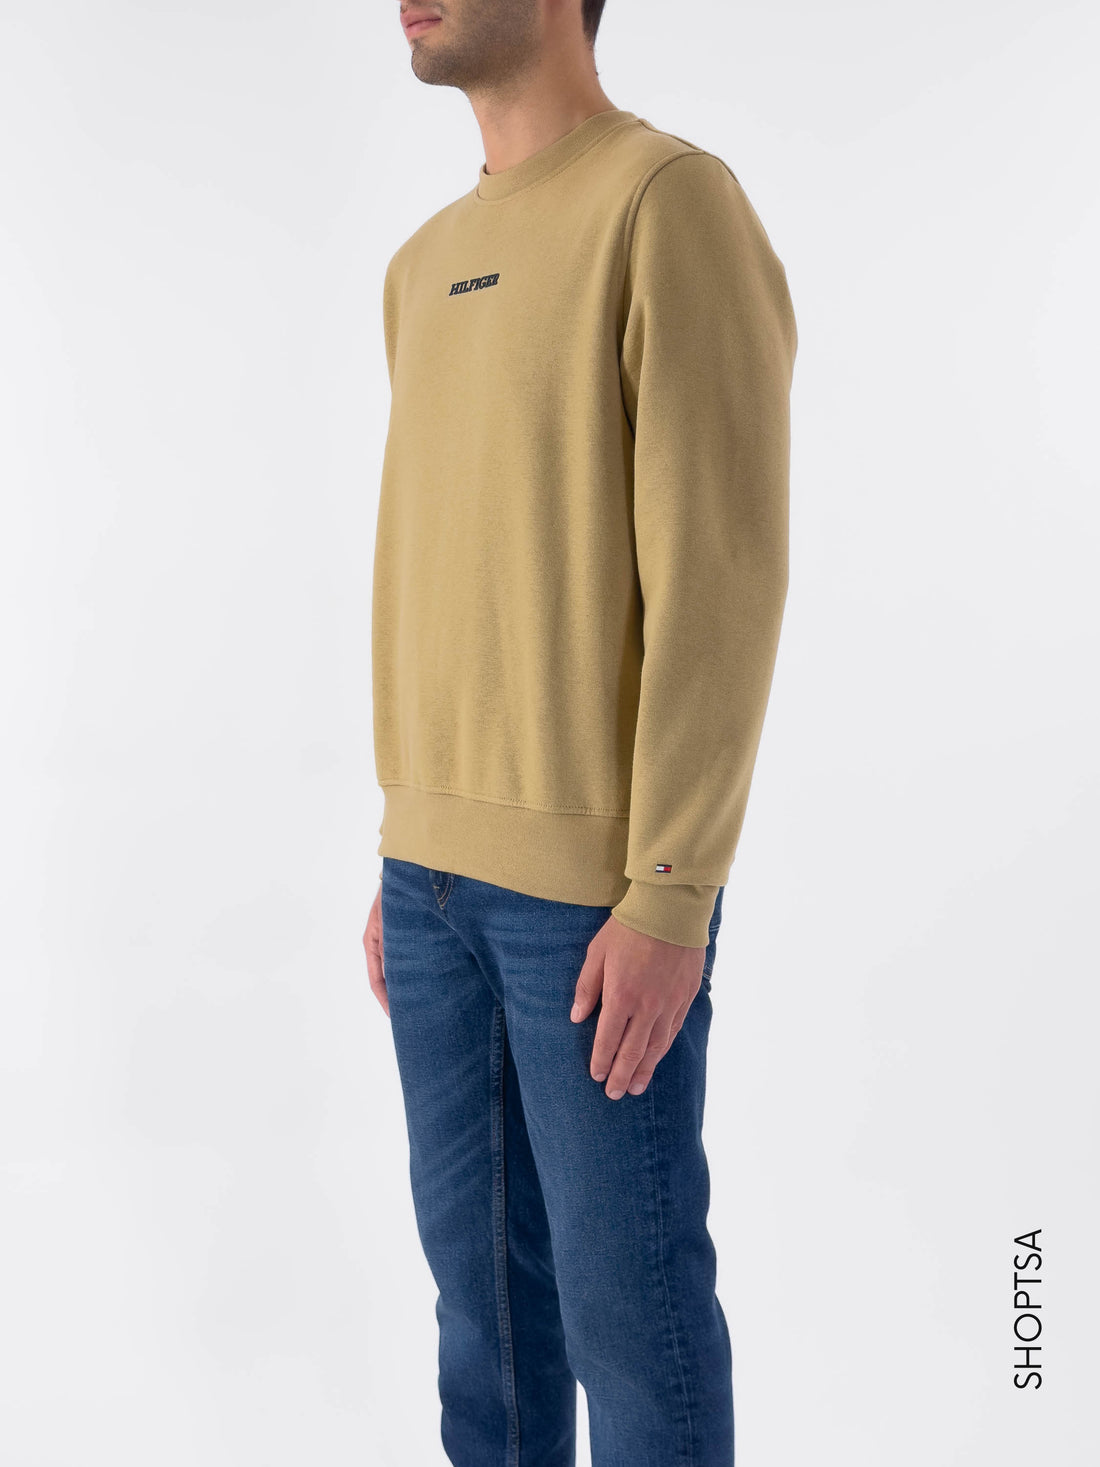 Monotype sweatshirt - Tommy Hilfiger